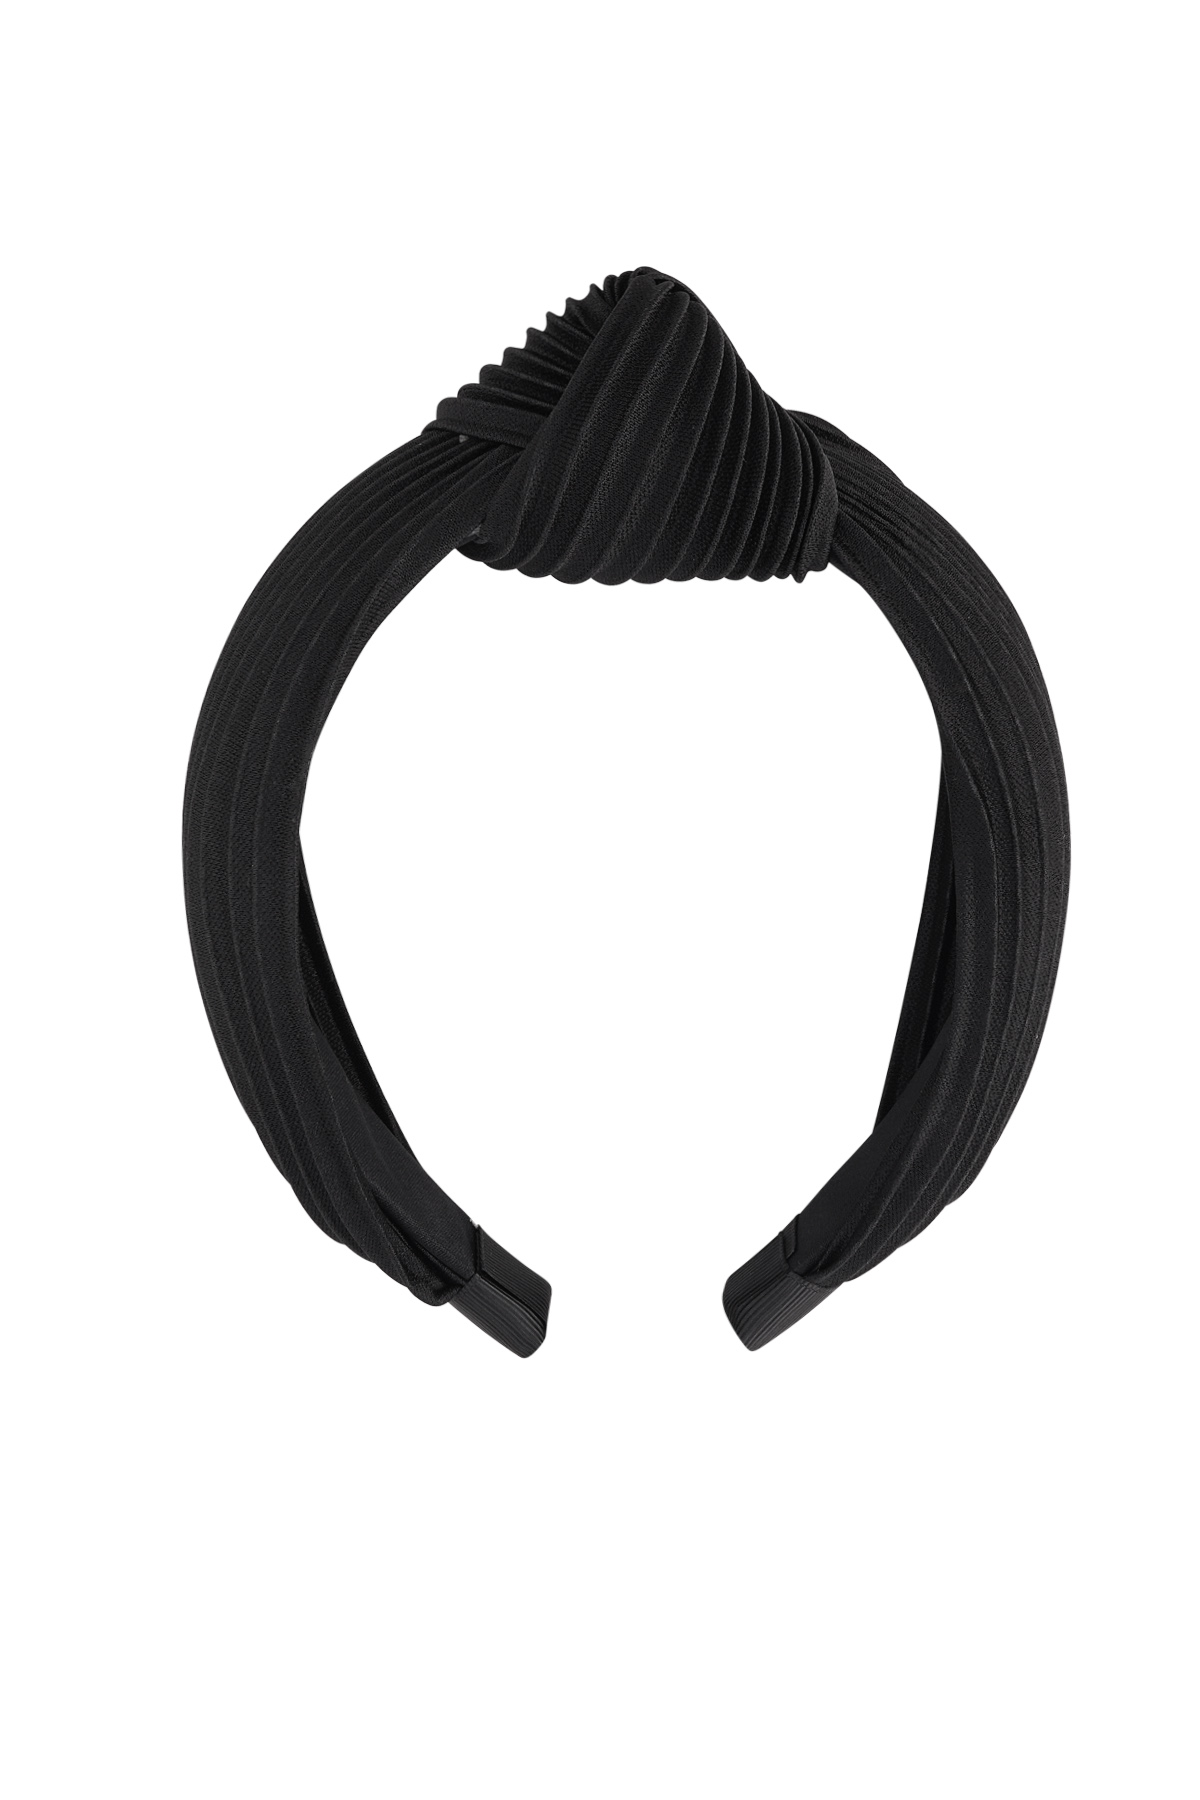 Haarband rib met knoop - zwart Plastic